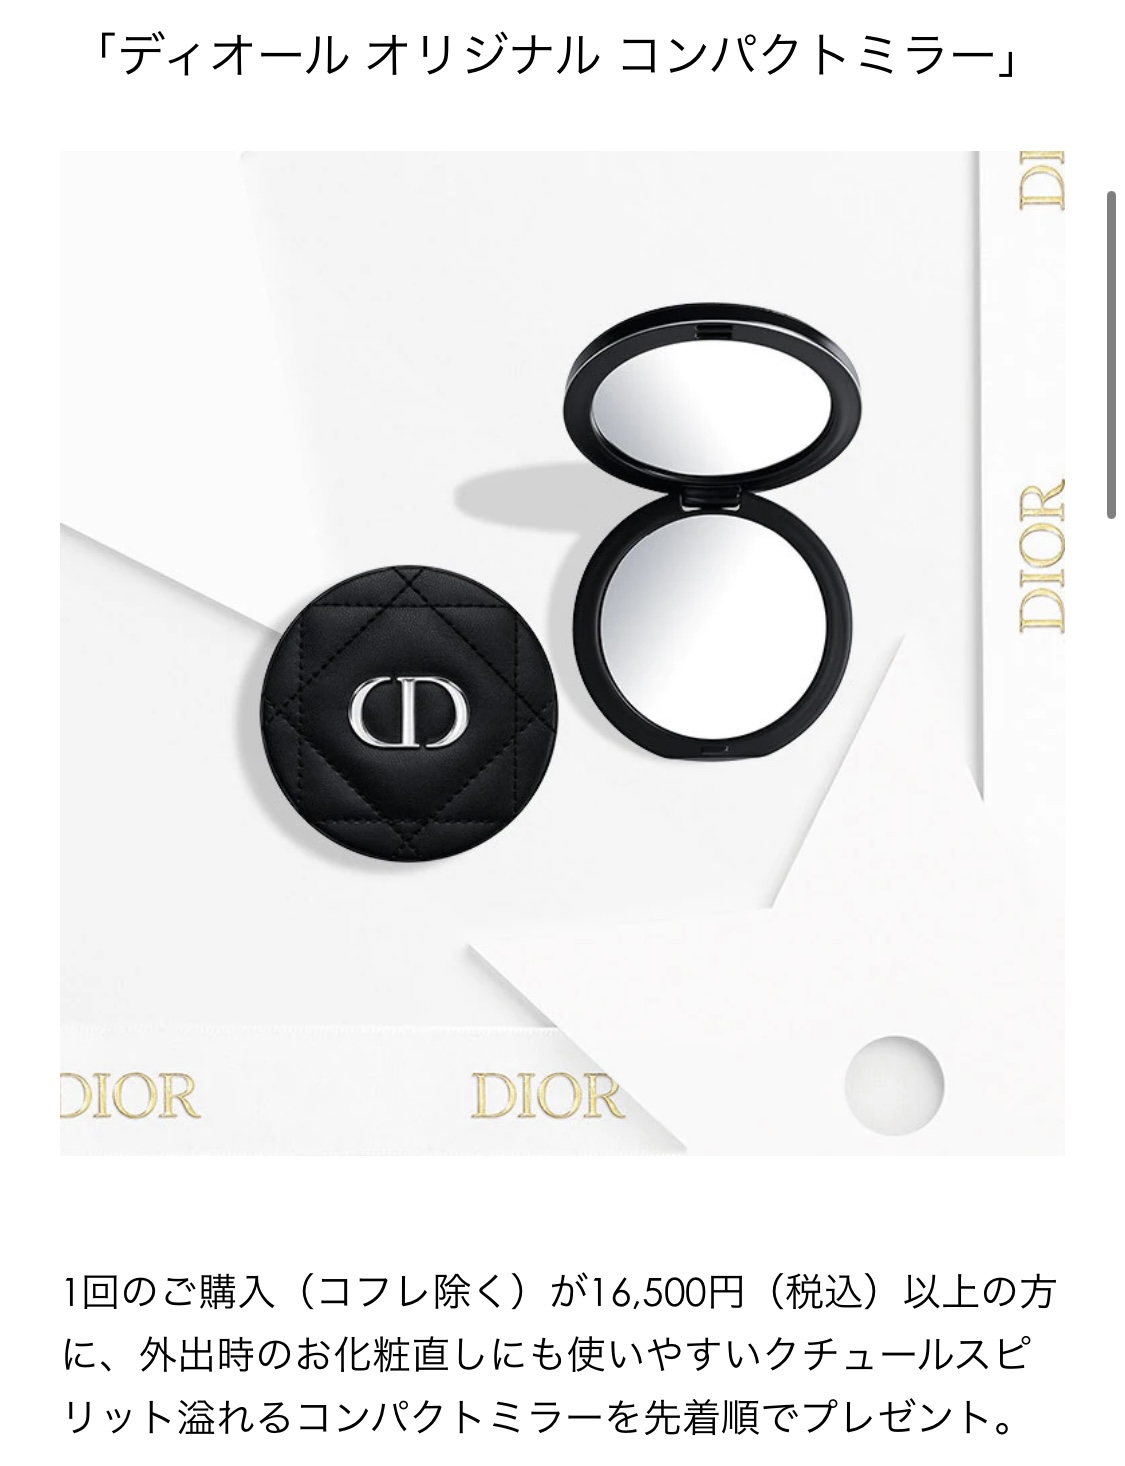 高価値セリー Dior オリジナルミラー